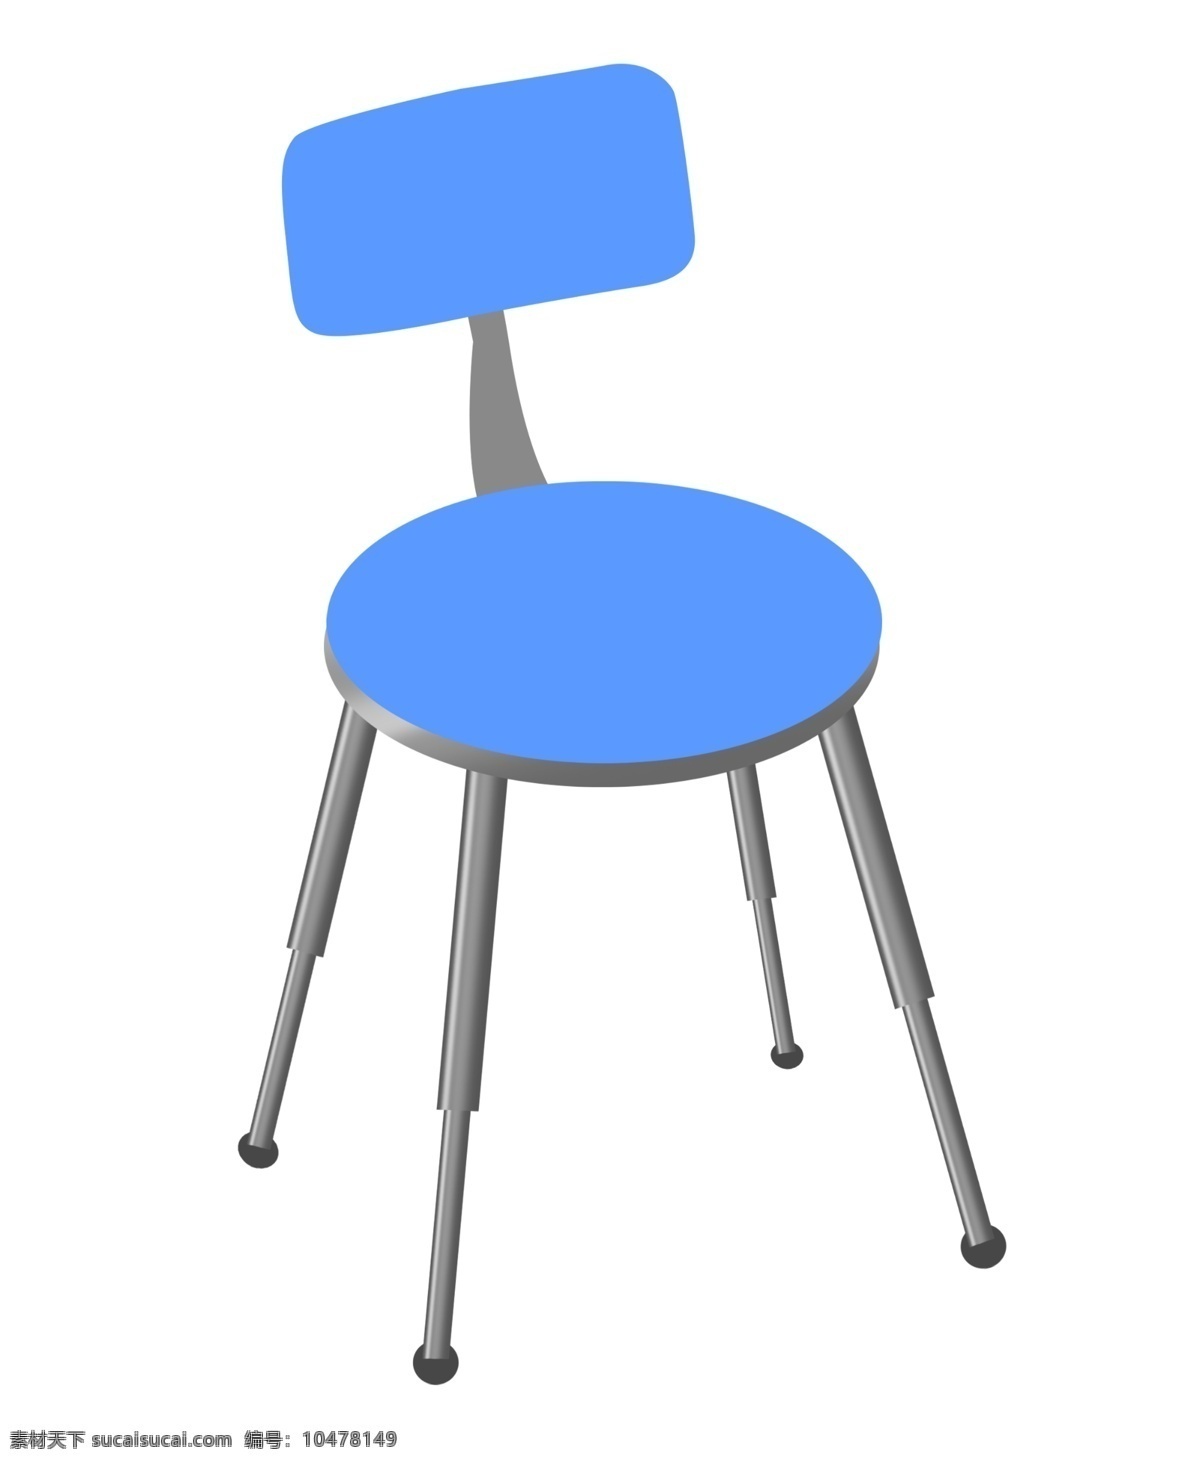 一把 蓝色 椅子 插图 一把椅子 蓝色椅子 椅子插画 圆形椅子 靠背椅子 椅子插图 家具